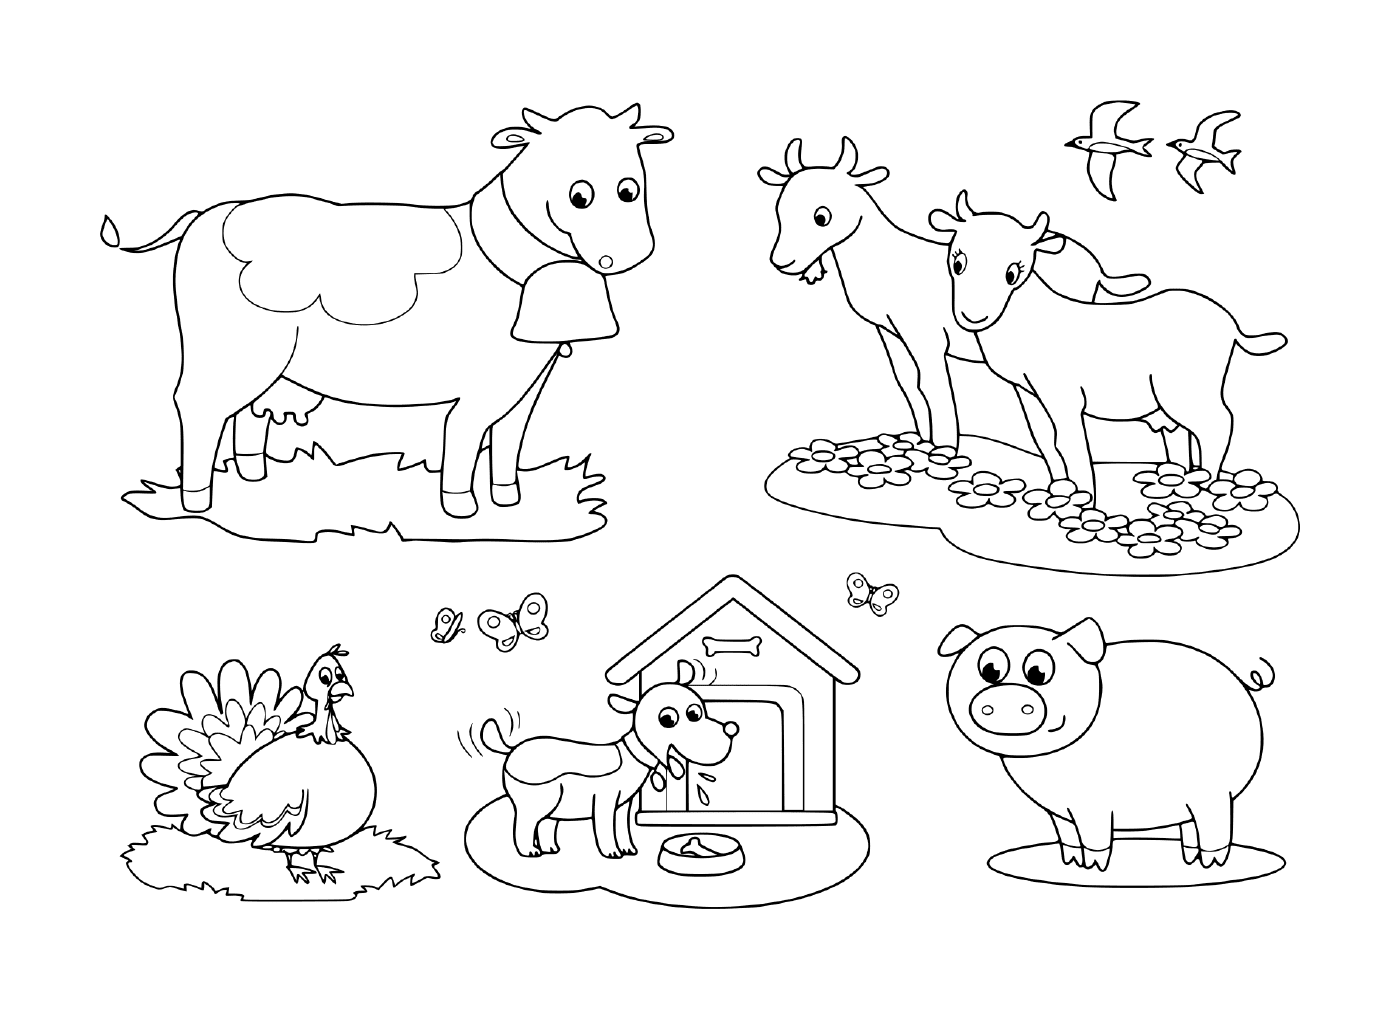  группа сельскохозяйственных животных, включая козла, корову, свинью, индейку, собаку и глотку 